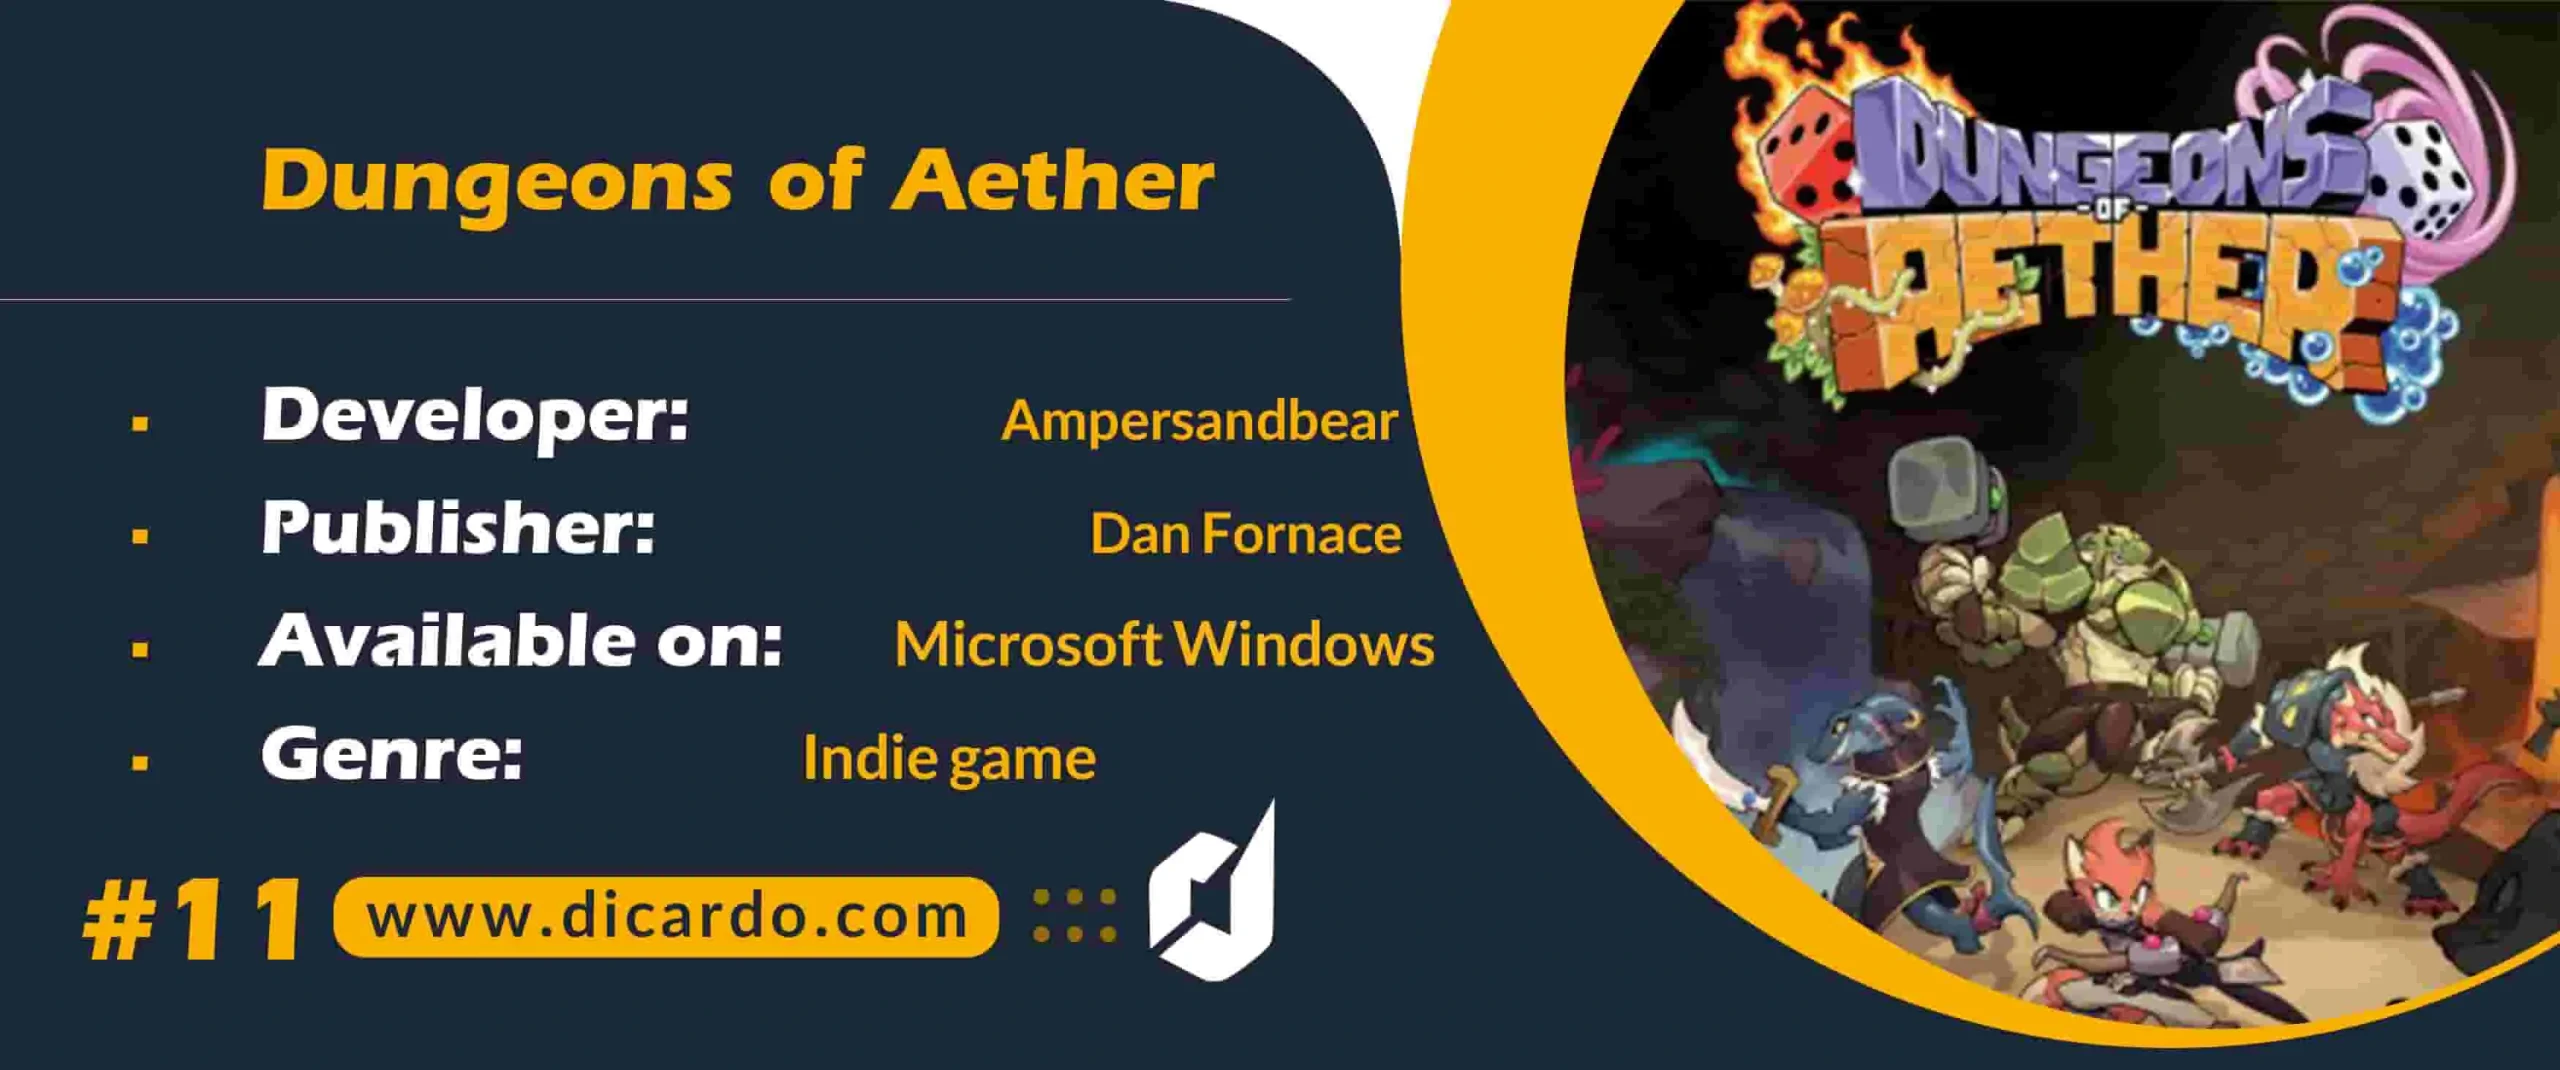 #11 دانجنس آف ایدر Dungeons of Aether از بازیهای PC چالش برانگیز